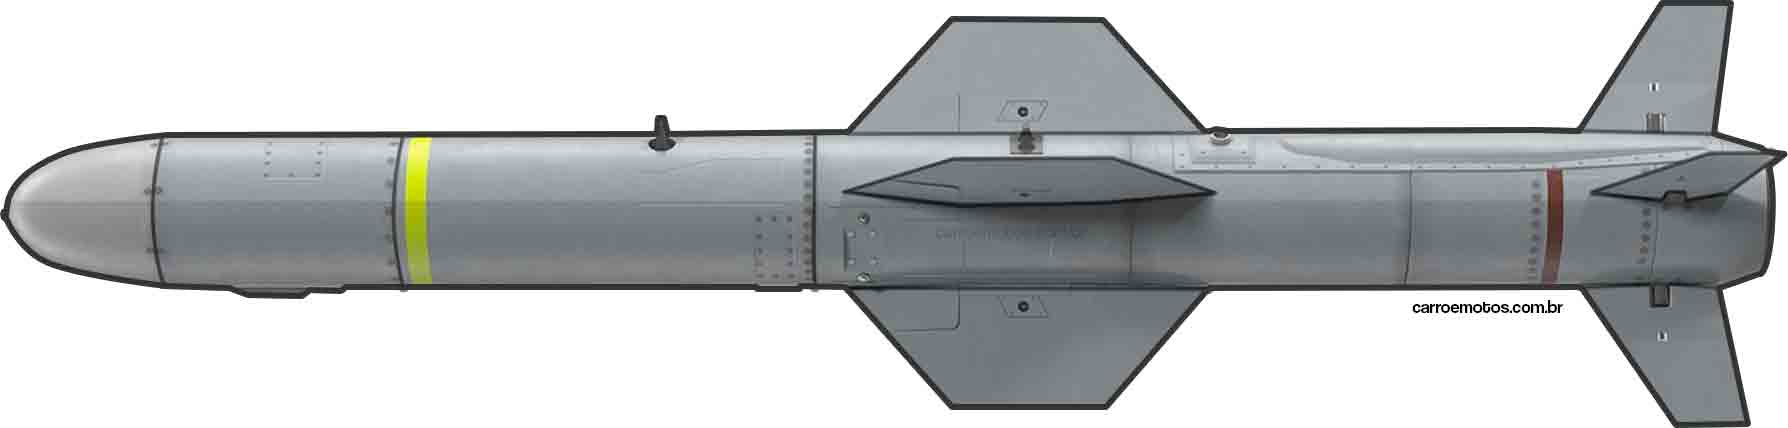 UGM-84L Harpoon Block II anti-ship missile. Photo: Carro e motos